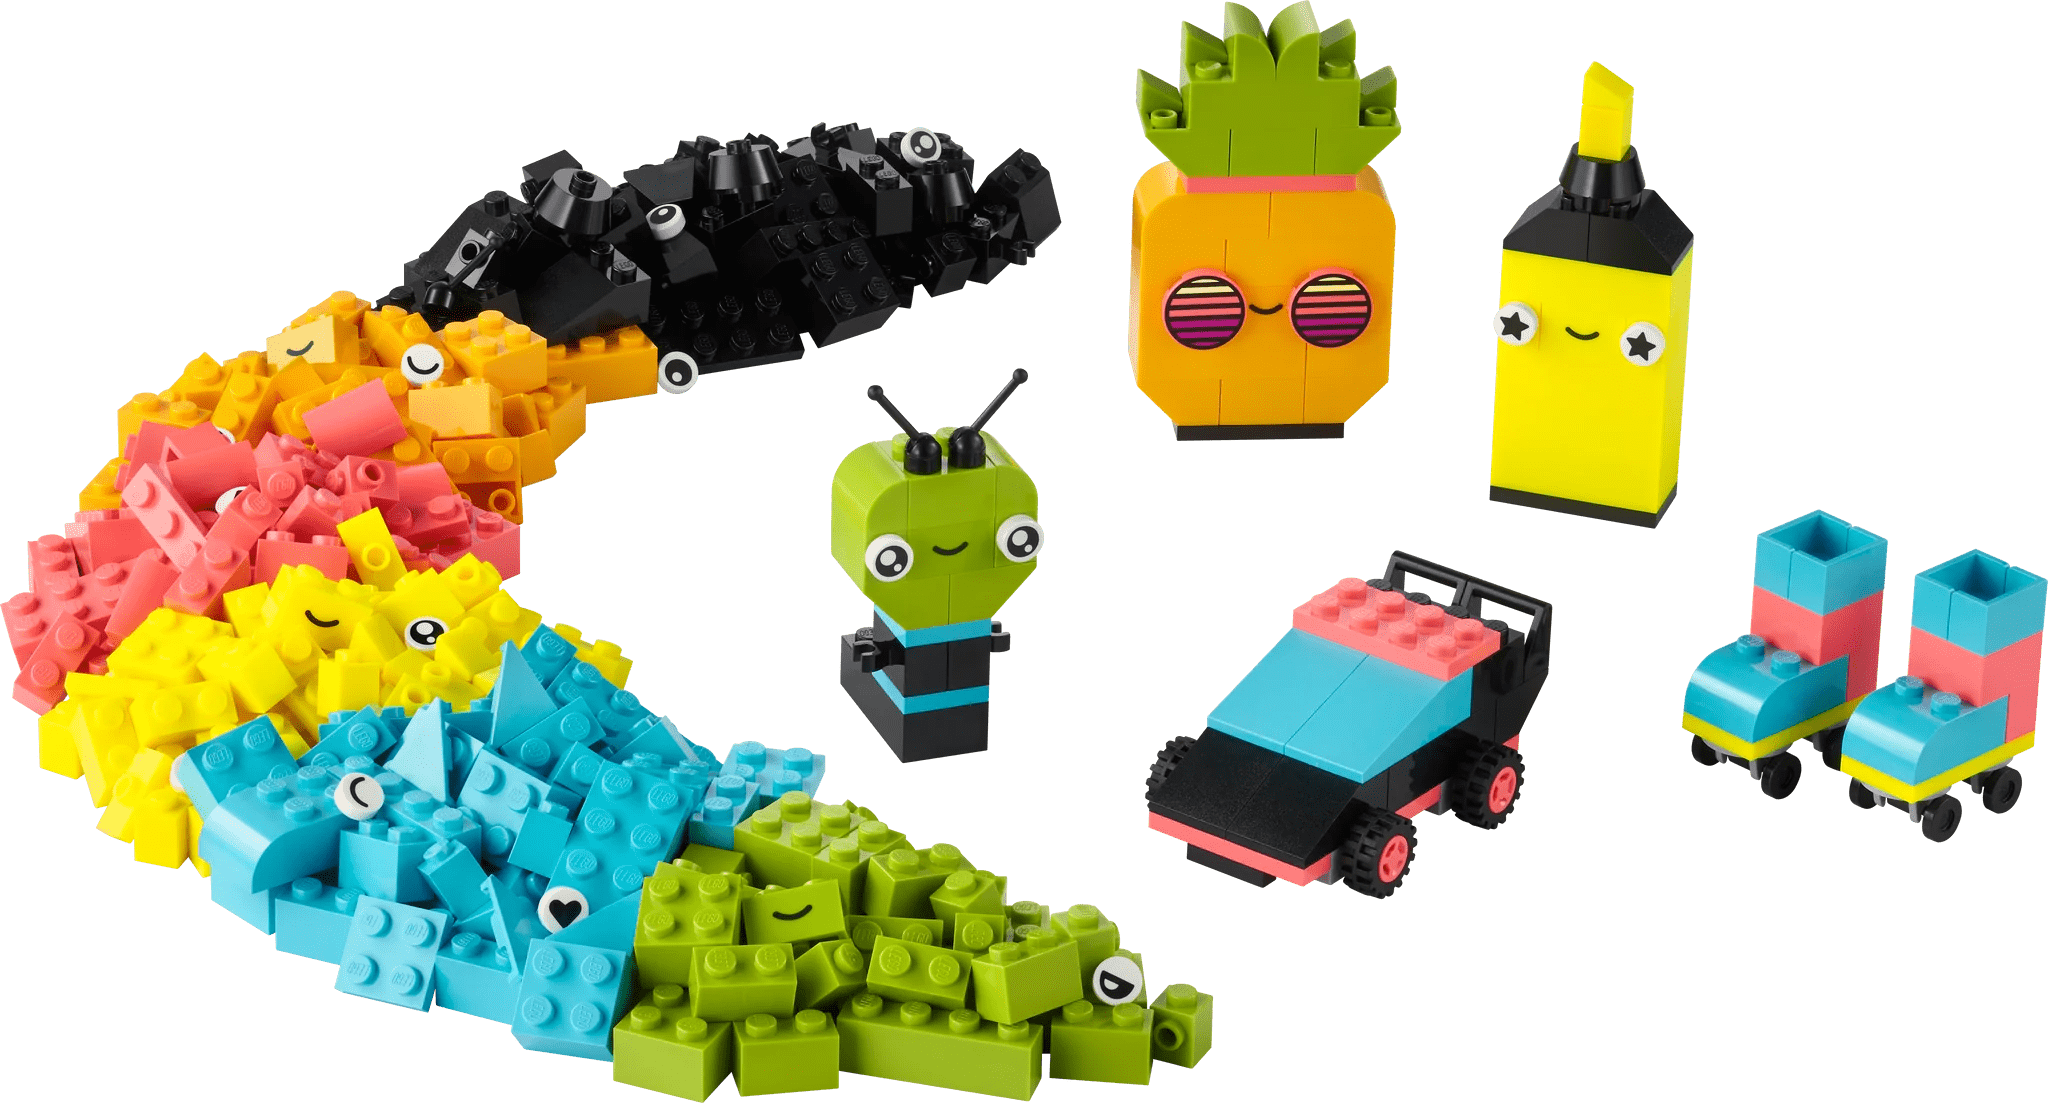 LEGO® Creative Neon Fun Lego Lil Tulips